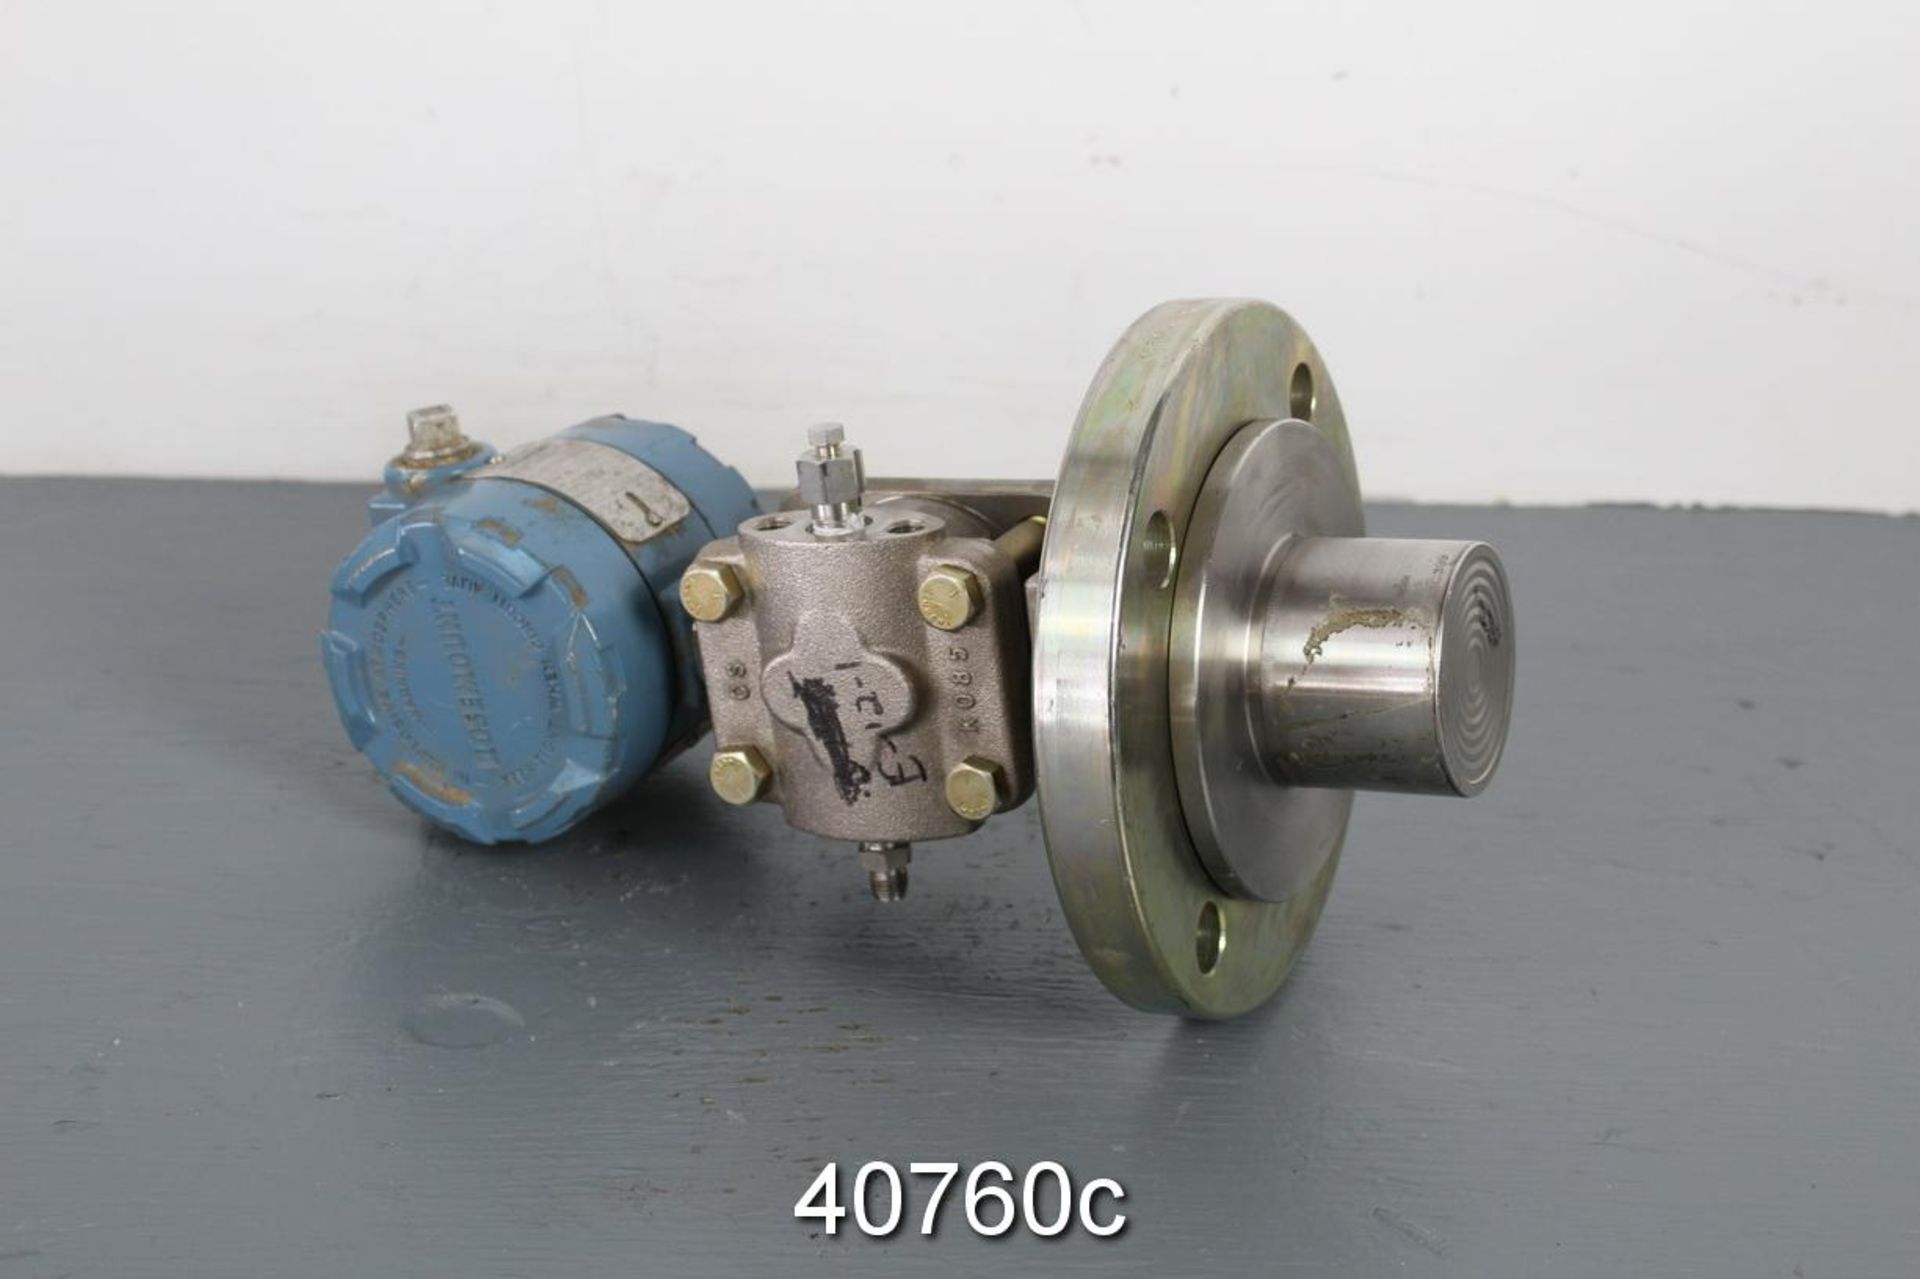 Rosemount 1151LT4SA2A52D Liquid Level Transmitter,, 3051 Series, Cal. 0-30 In H20, Max W.p. 285 - Image 3 of 4